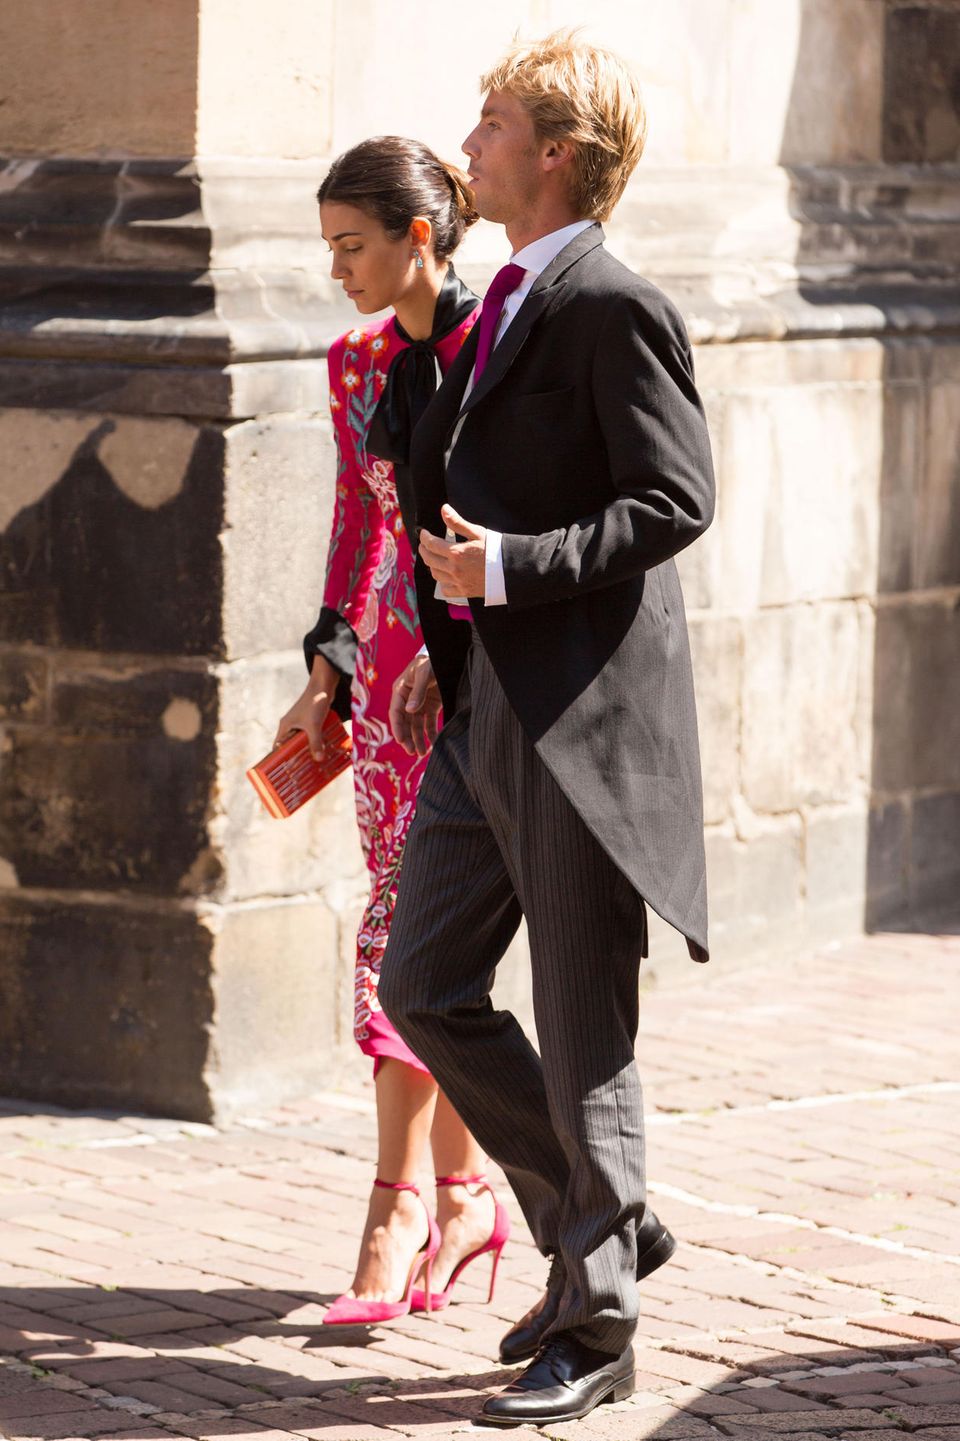 Prinz Christian von Hannover und seine Verlobte Alessandra de Osma sind selbstverständlich auch unter den Gästen und spazieren über das Kopfsteinpflaster in Richtung Haupteingang. Der jüngere Bruder des Bräutigams wird wohl im nächsten Sommer Hochzeit feiern.